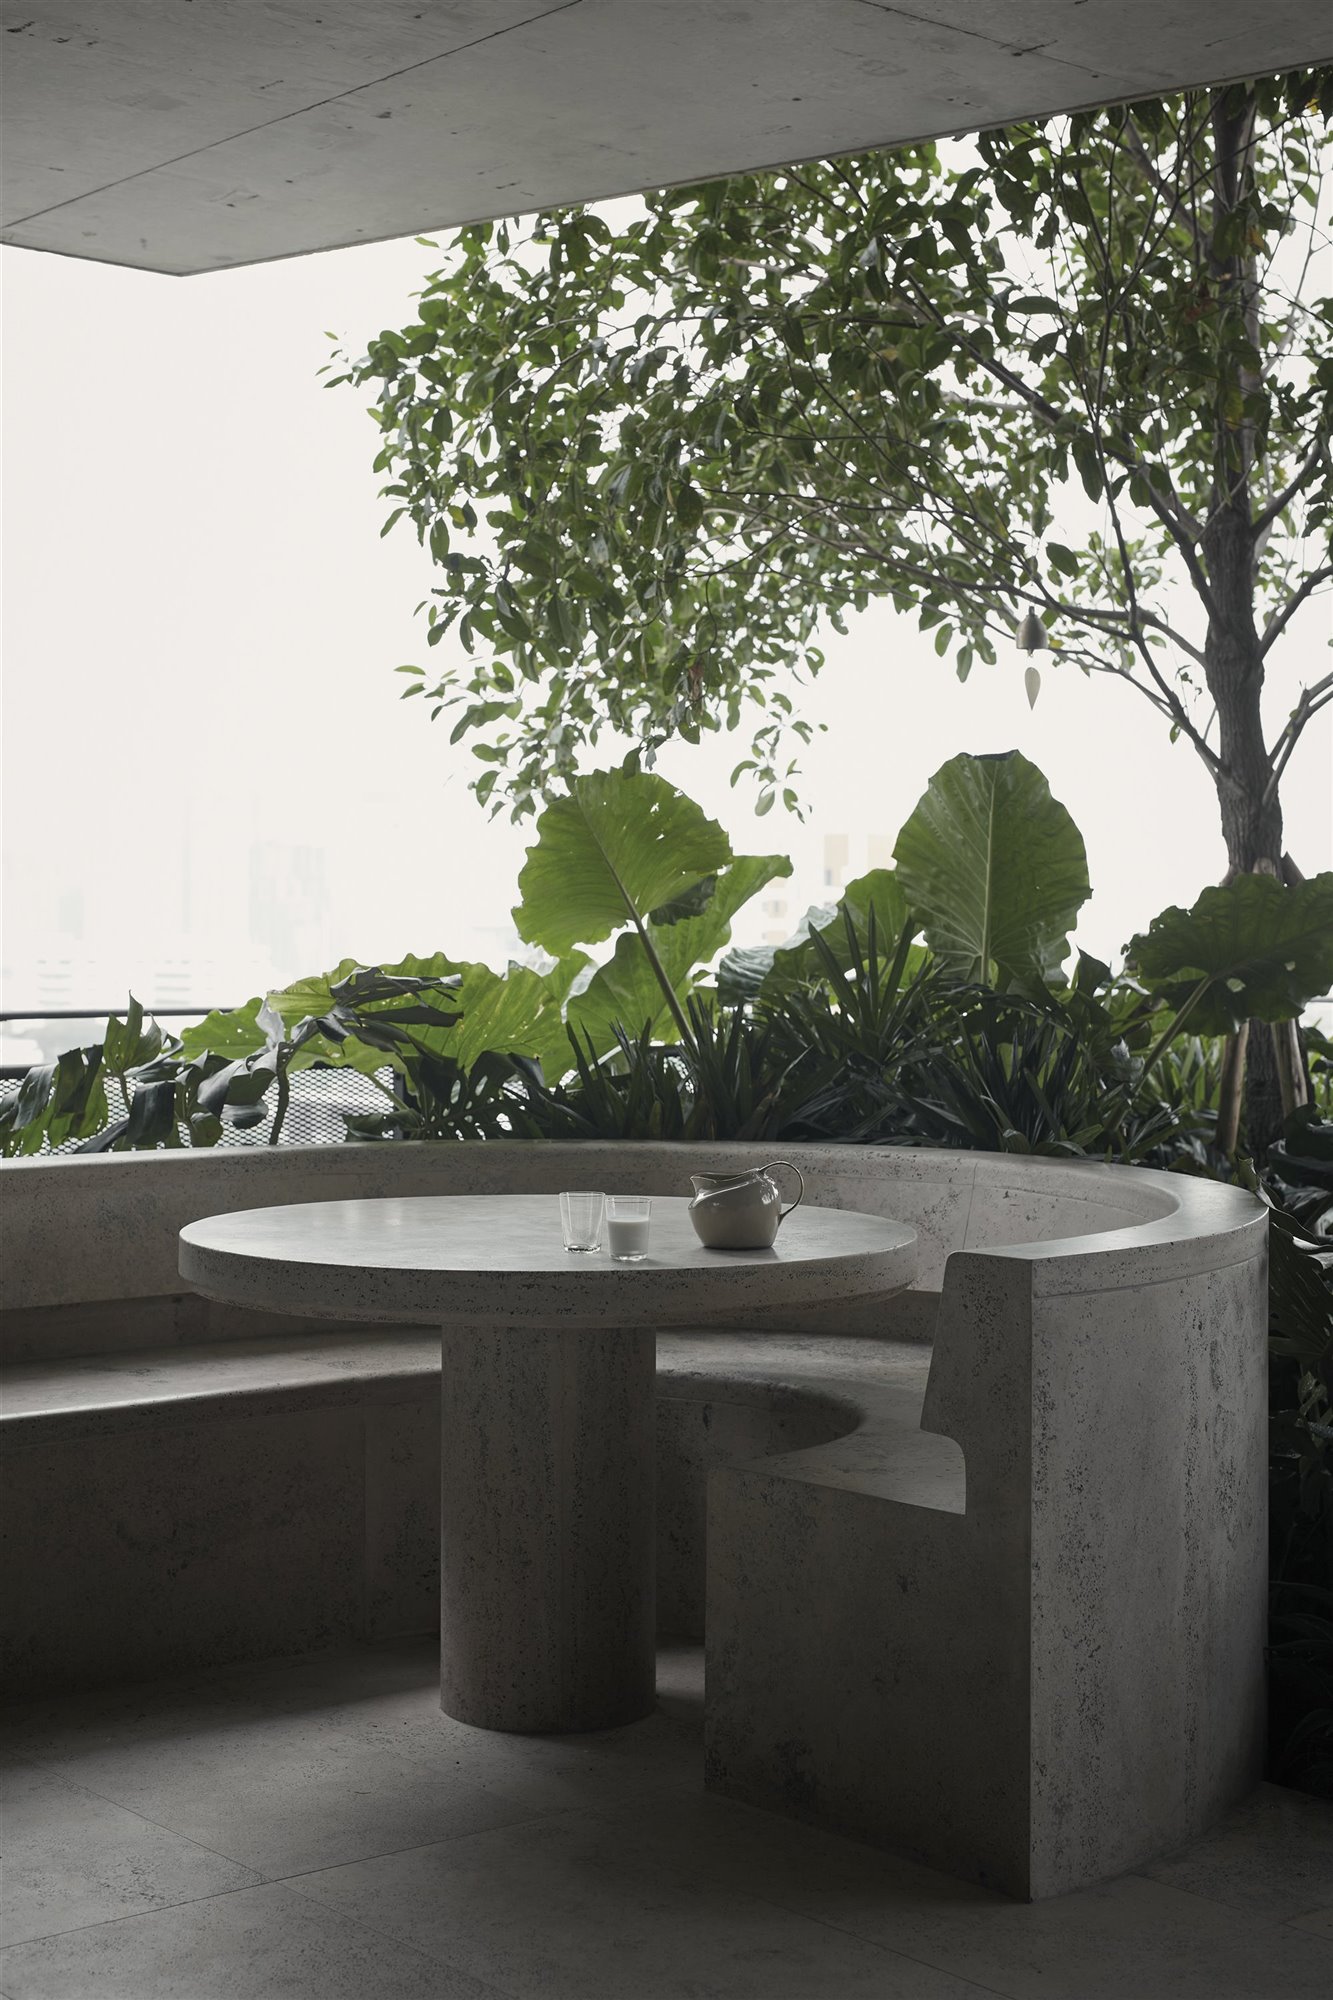 Exterior de una casa moderna con banco y mesa redonda de piedra